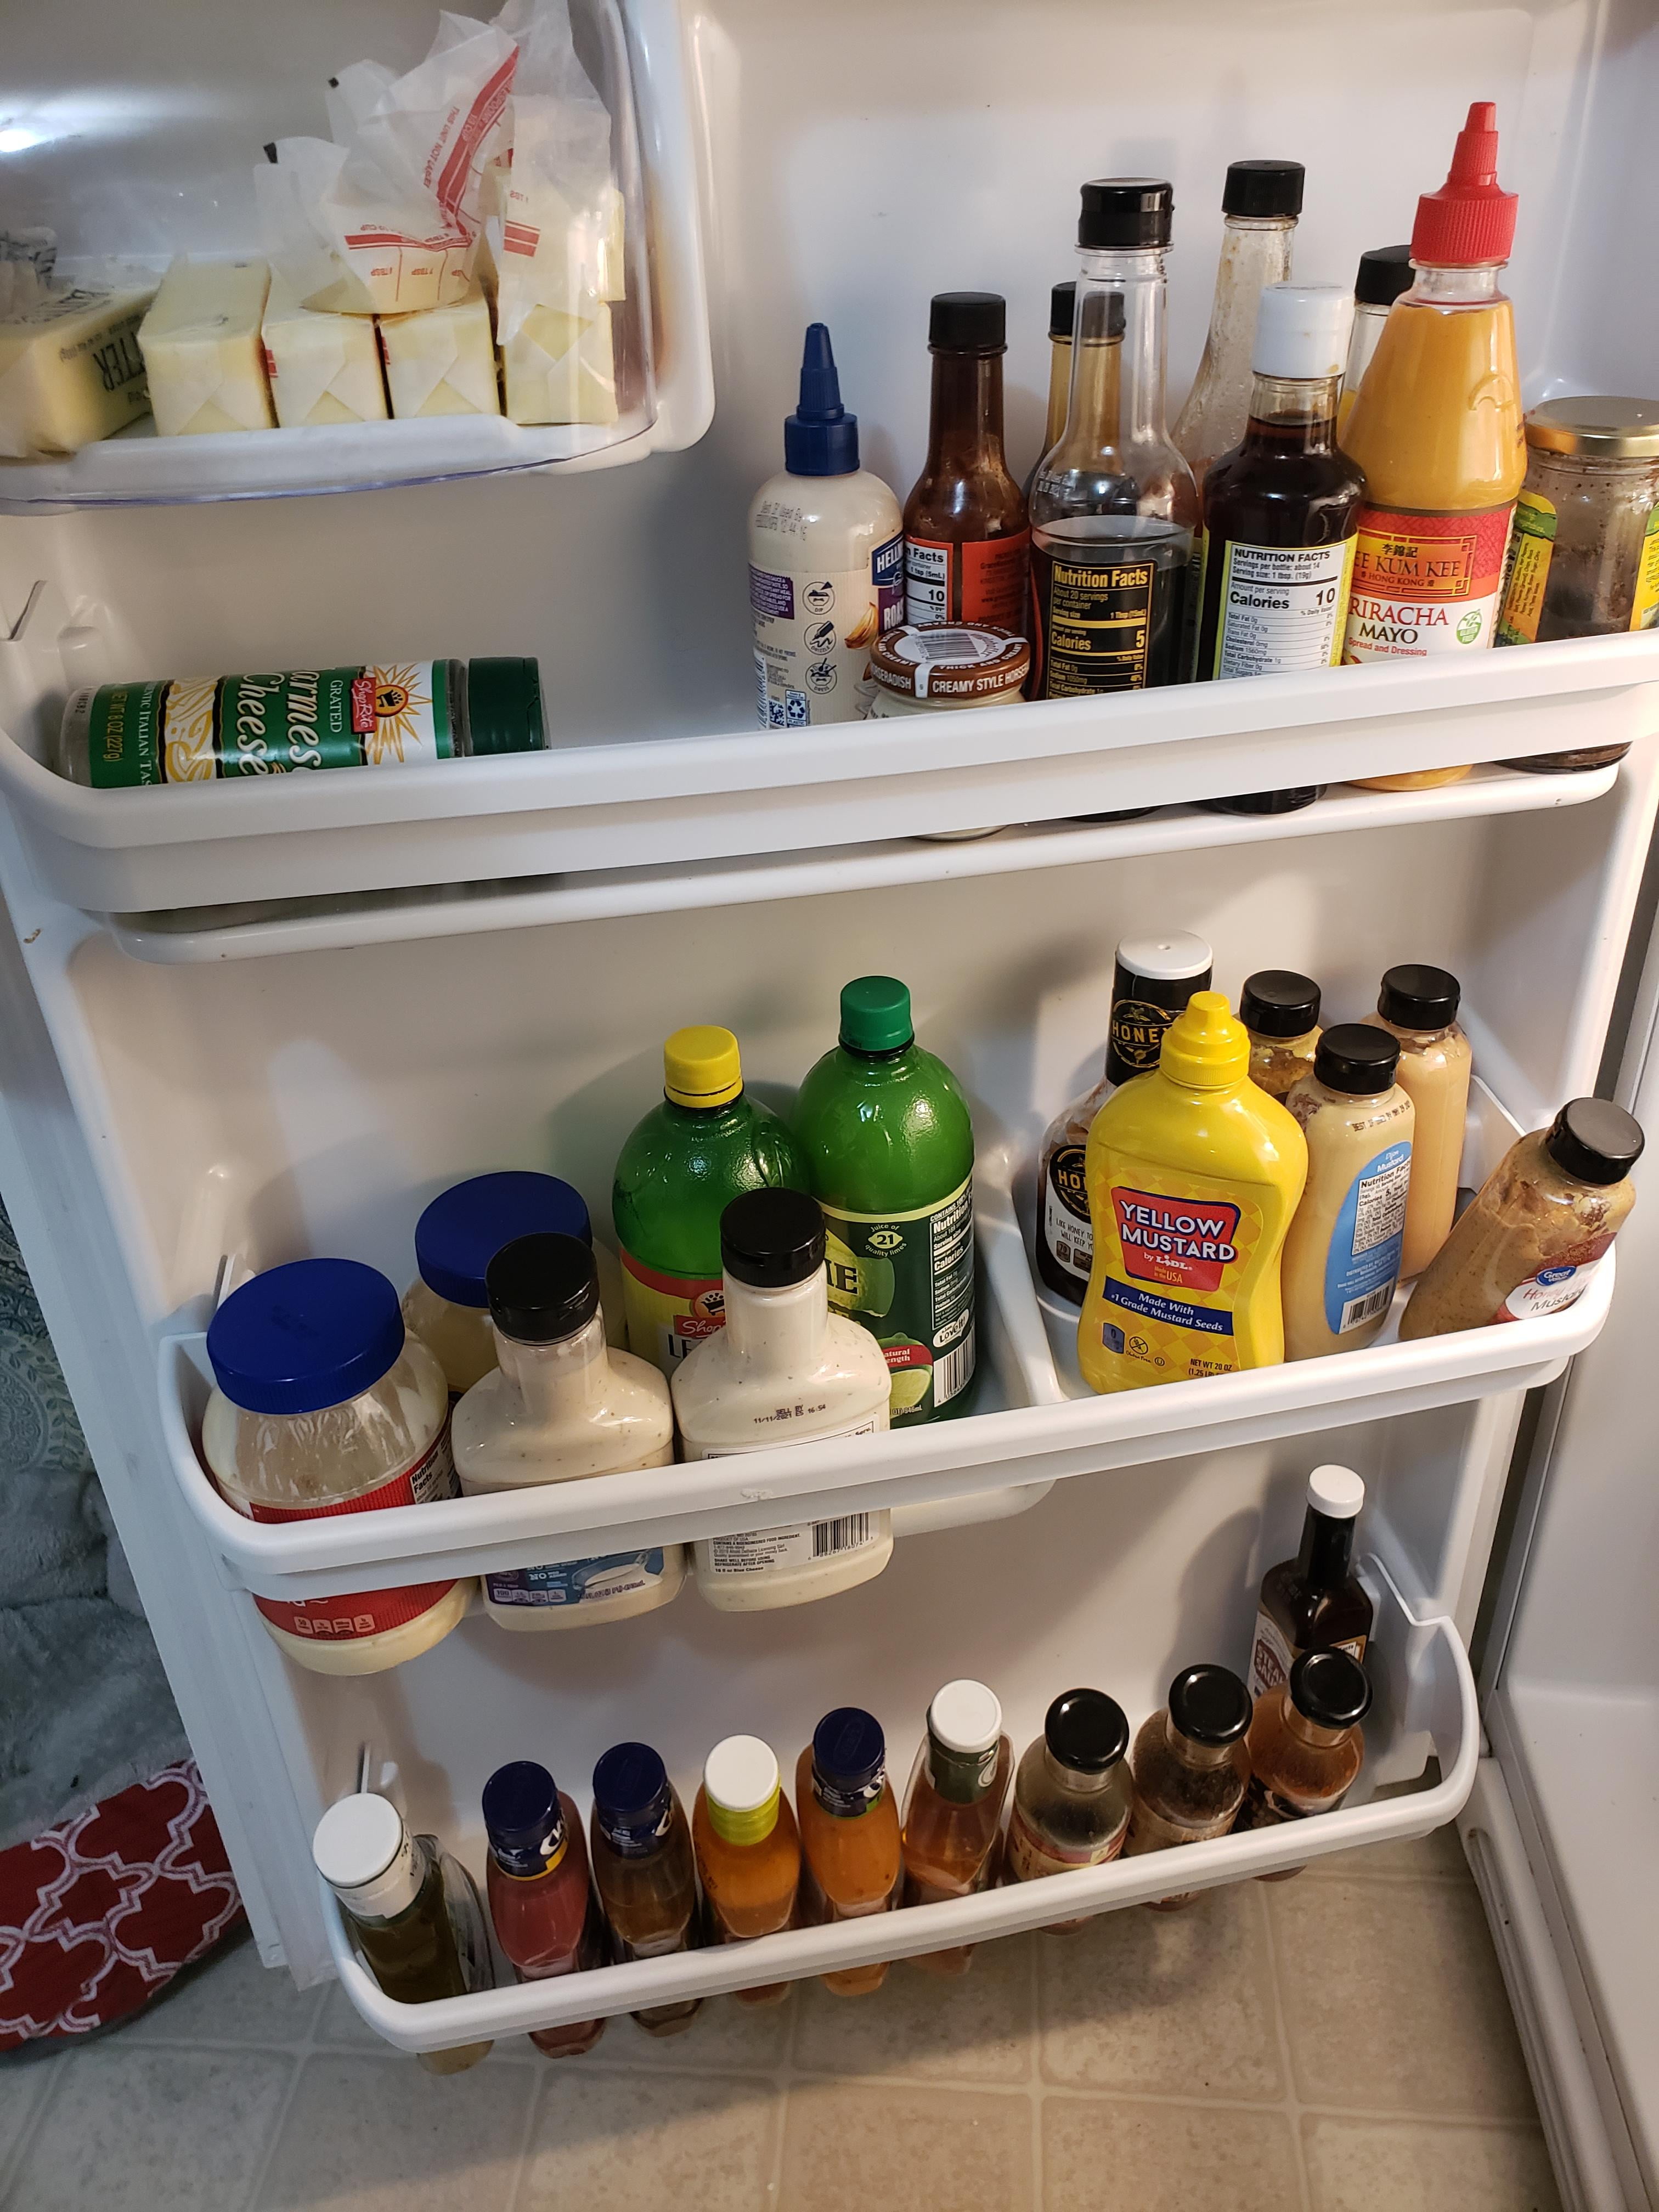 Kitchen Details Clear Slim Refrigerator Shelf Organizer 28513 - The Home  Depot